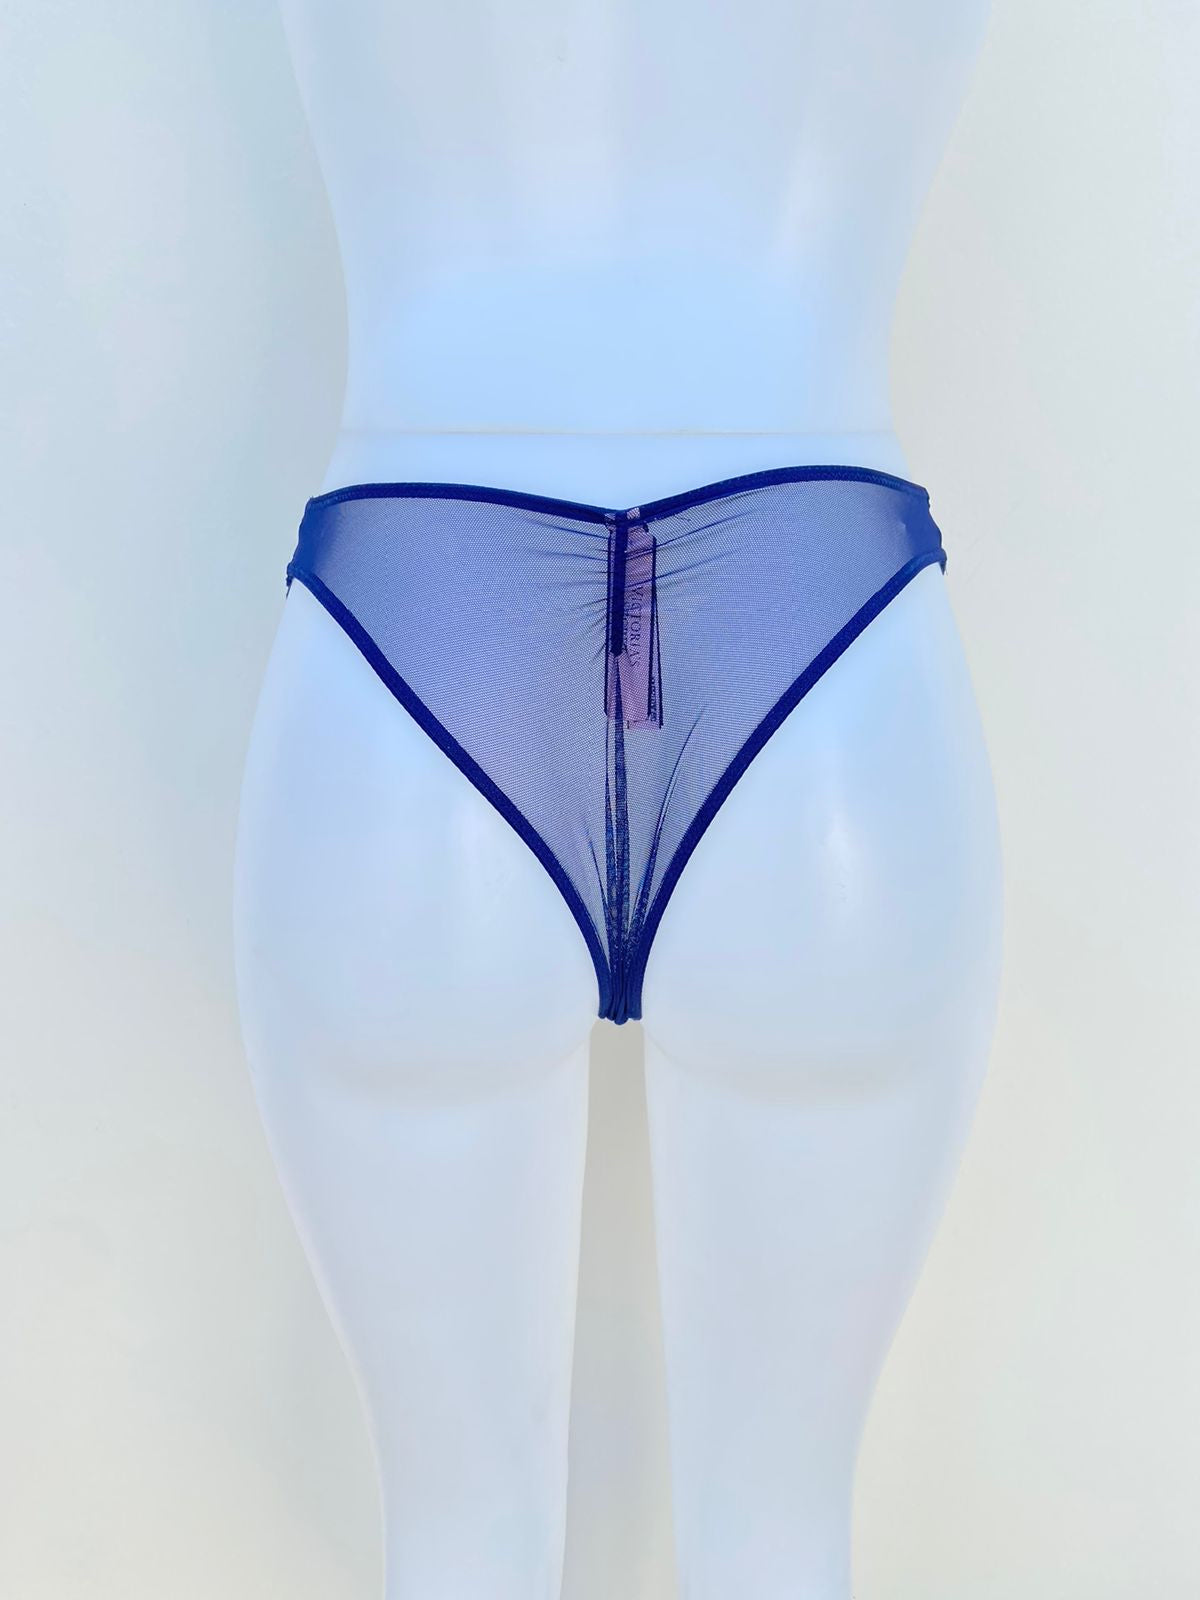 Panti Victoria’s Secret original, azul con descubiertos en el centro y transparente en la parte detrás.